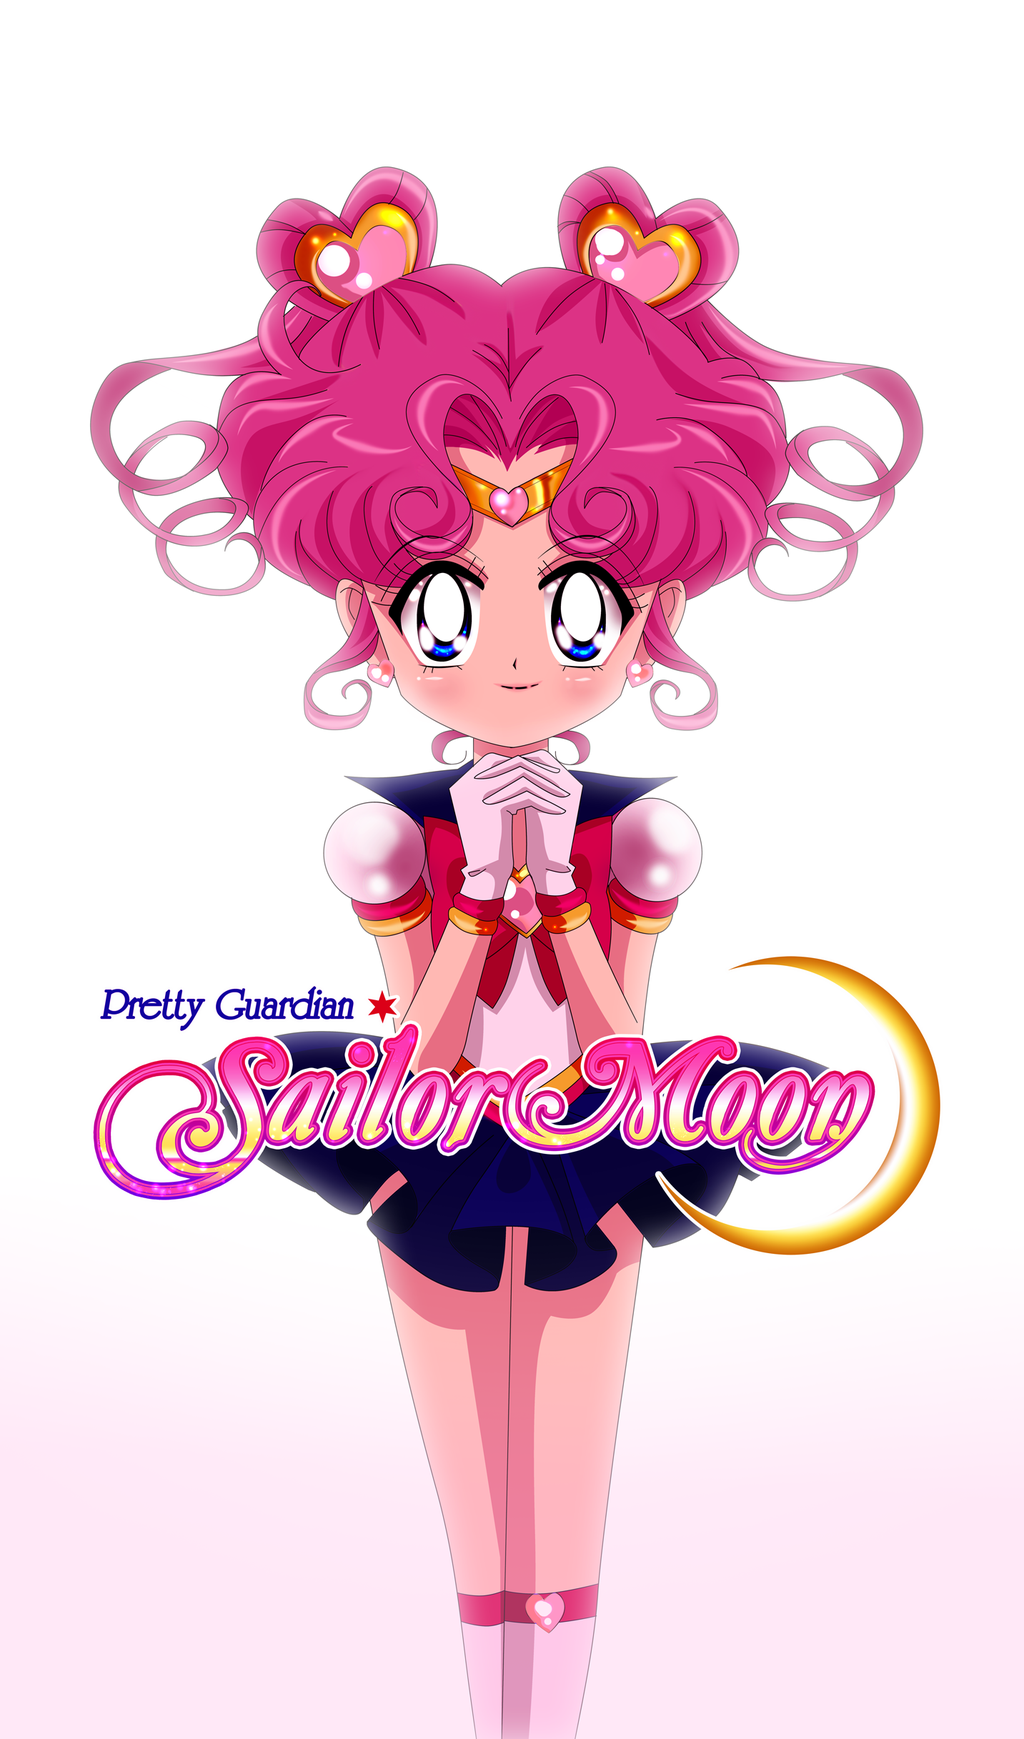 Chibi chibi. Sailor chibi moon, Sailor mini moon, Sailor moon character